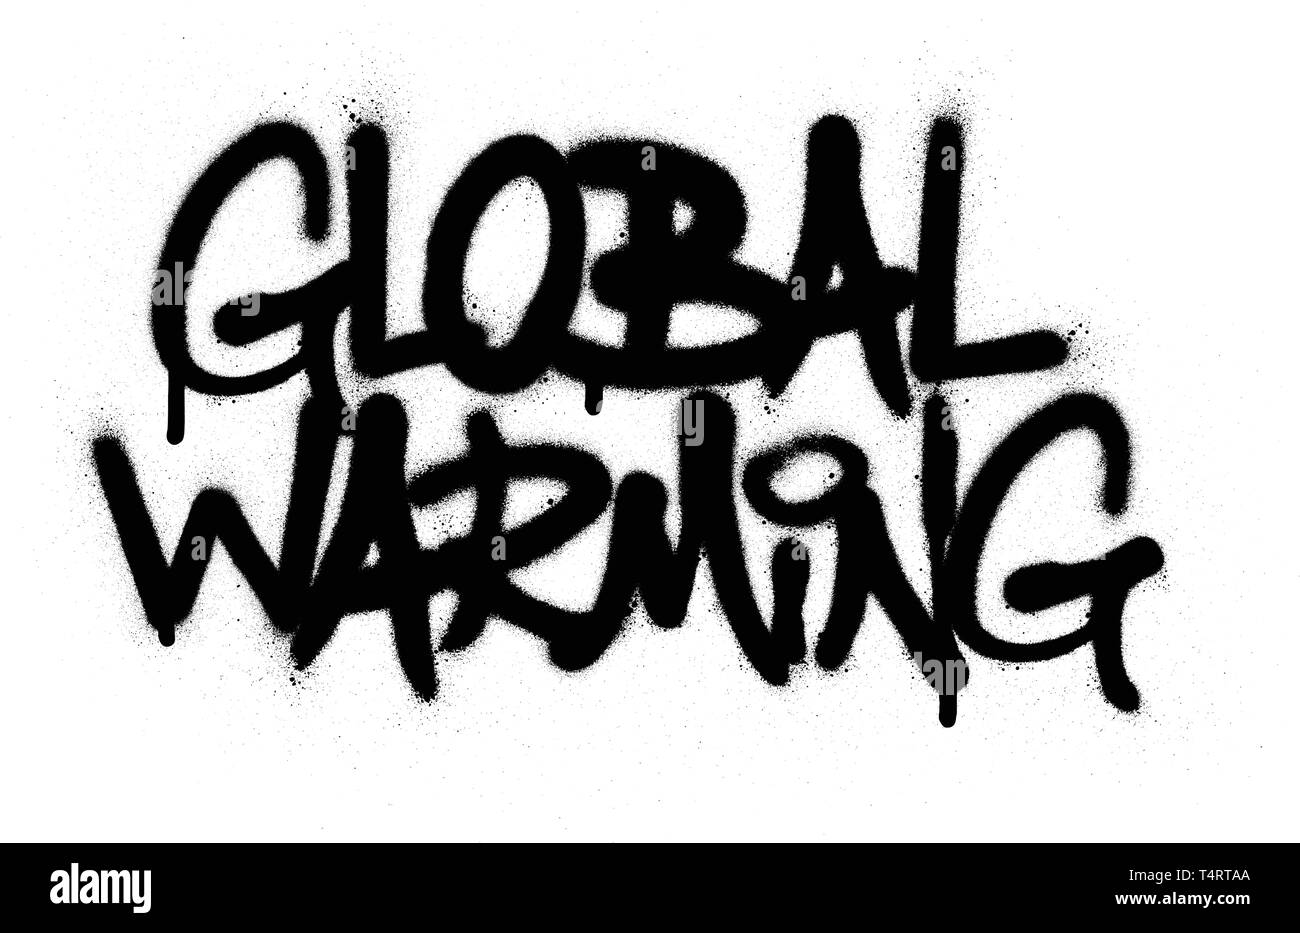 Graffiti globale Erwärmung Text in Schwarz auf Weiß gespritzt Stock Vektor